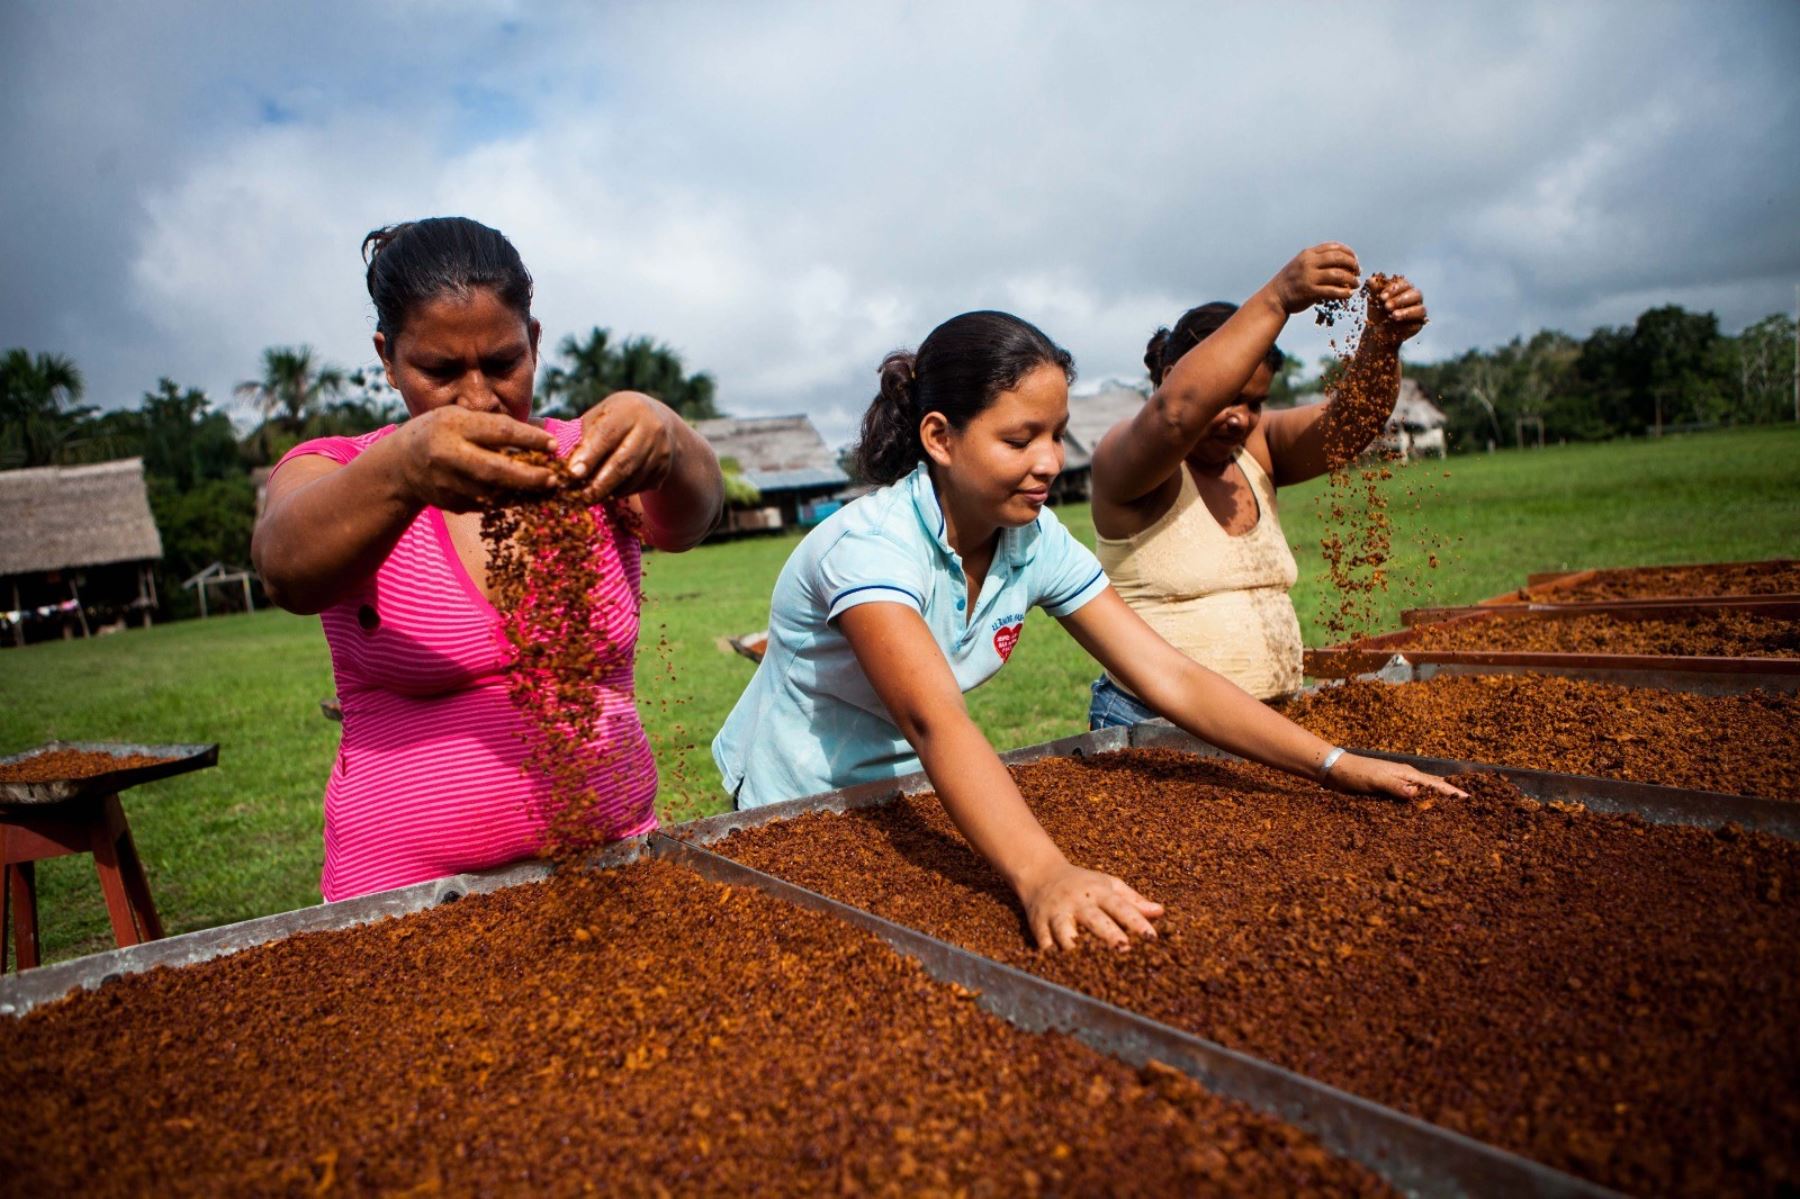 La cosecha y transformación del cacao en chocolate forma una cadena productiva en el país. ANDINA/Difusión